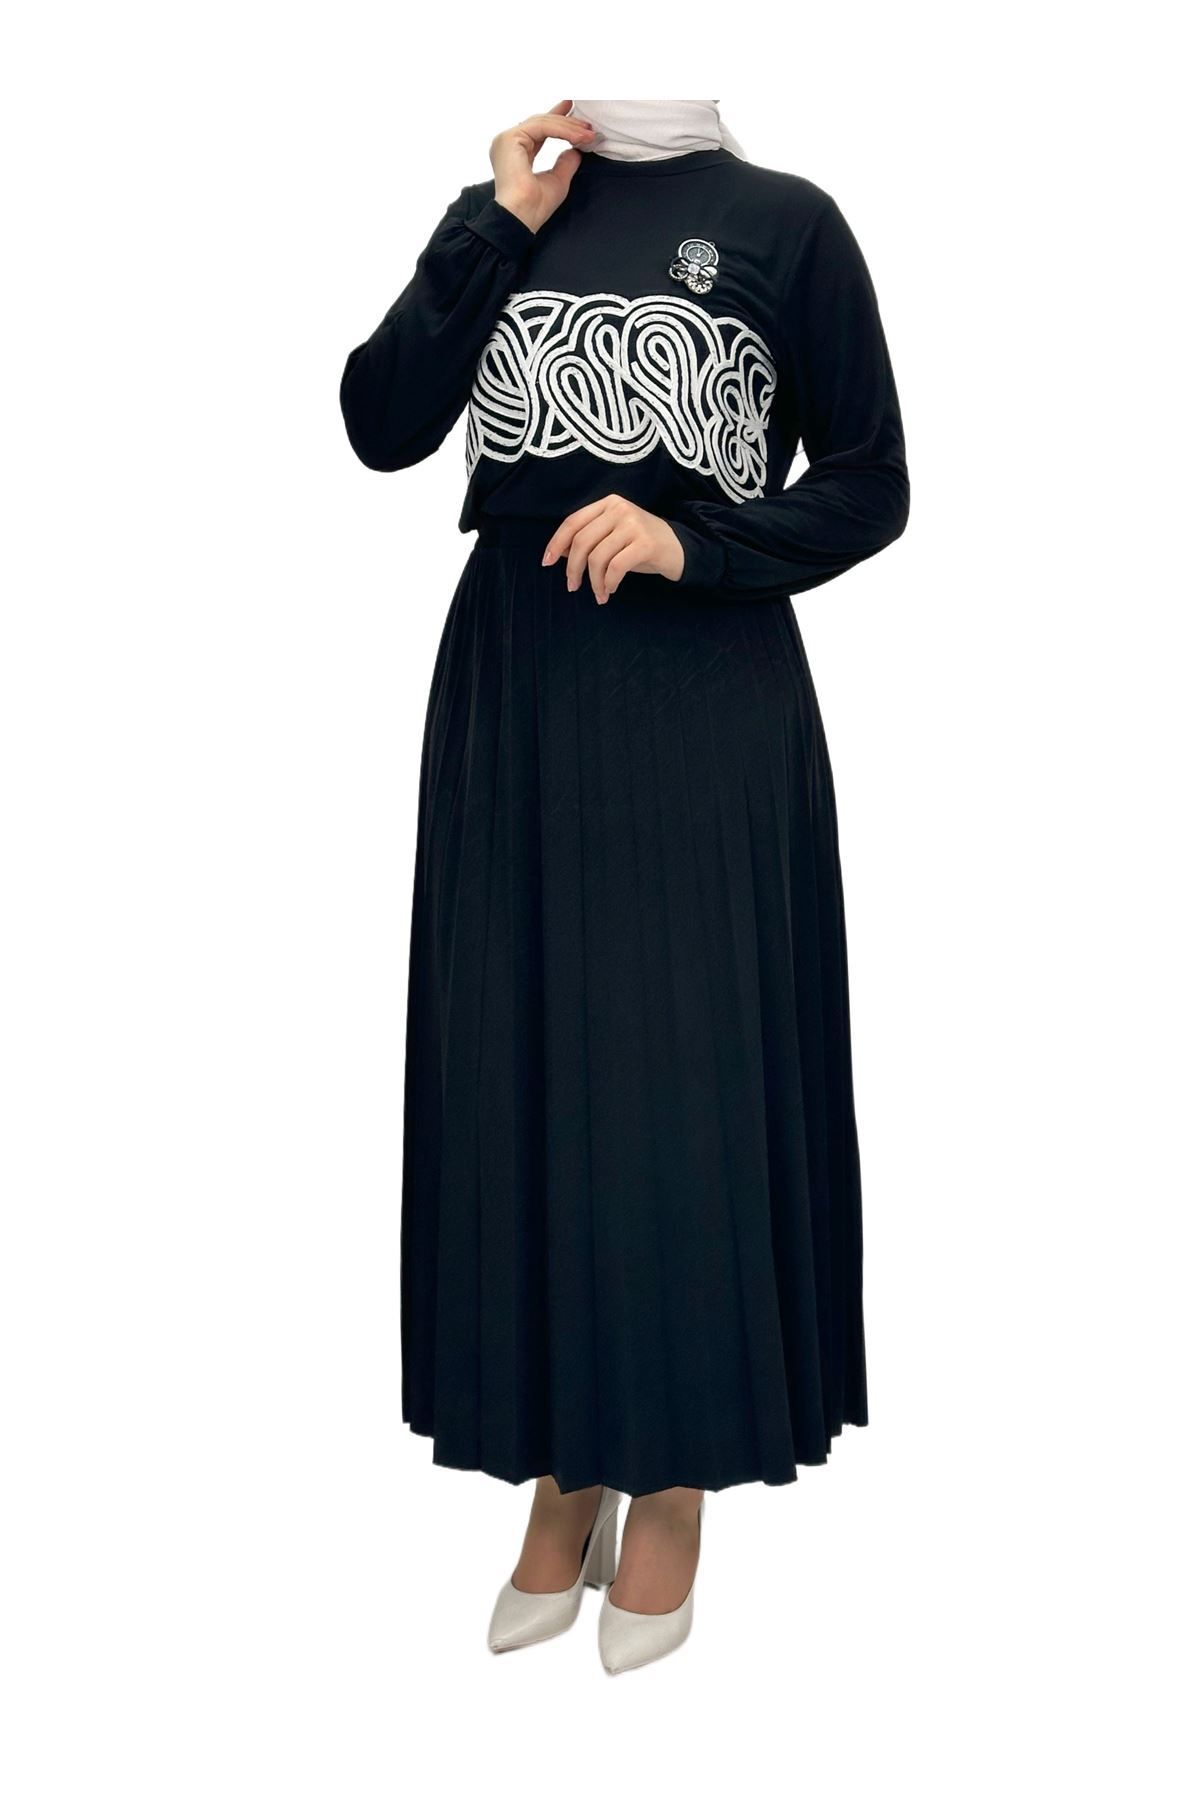 ottoman wear OTW1952 Etekli Takım Siyah